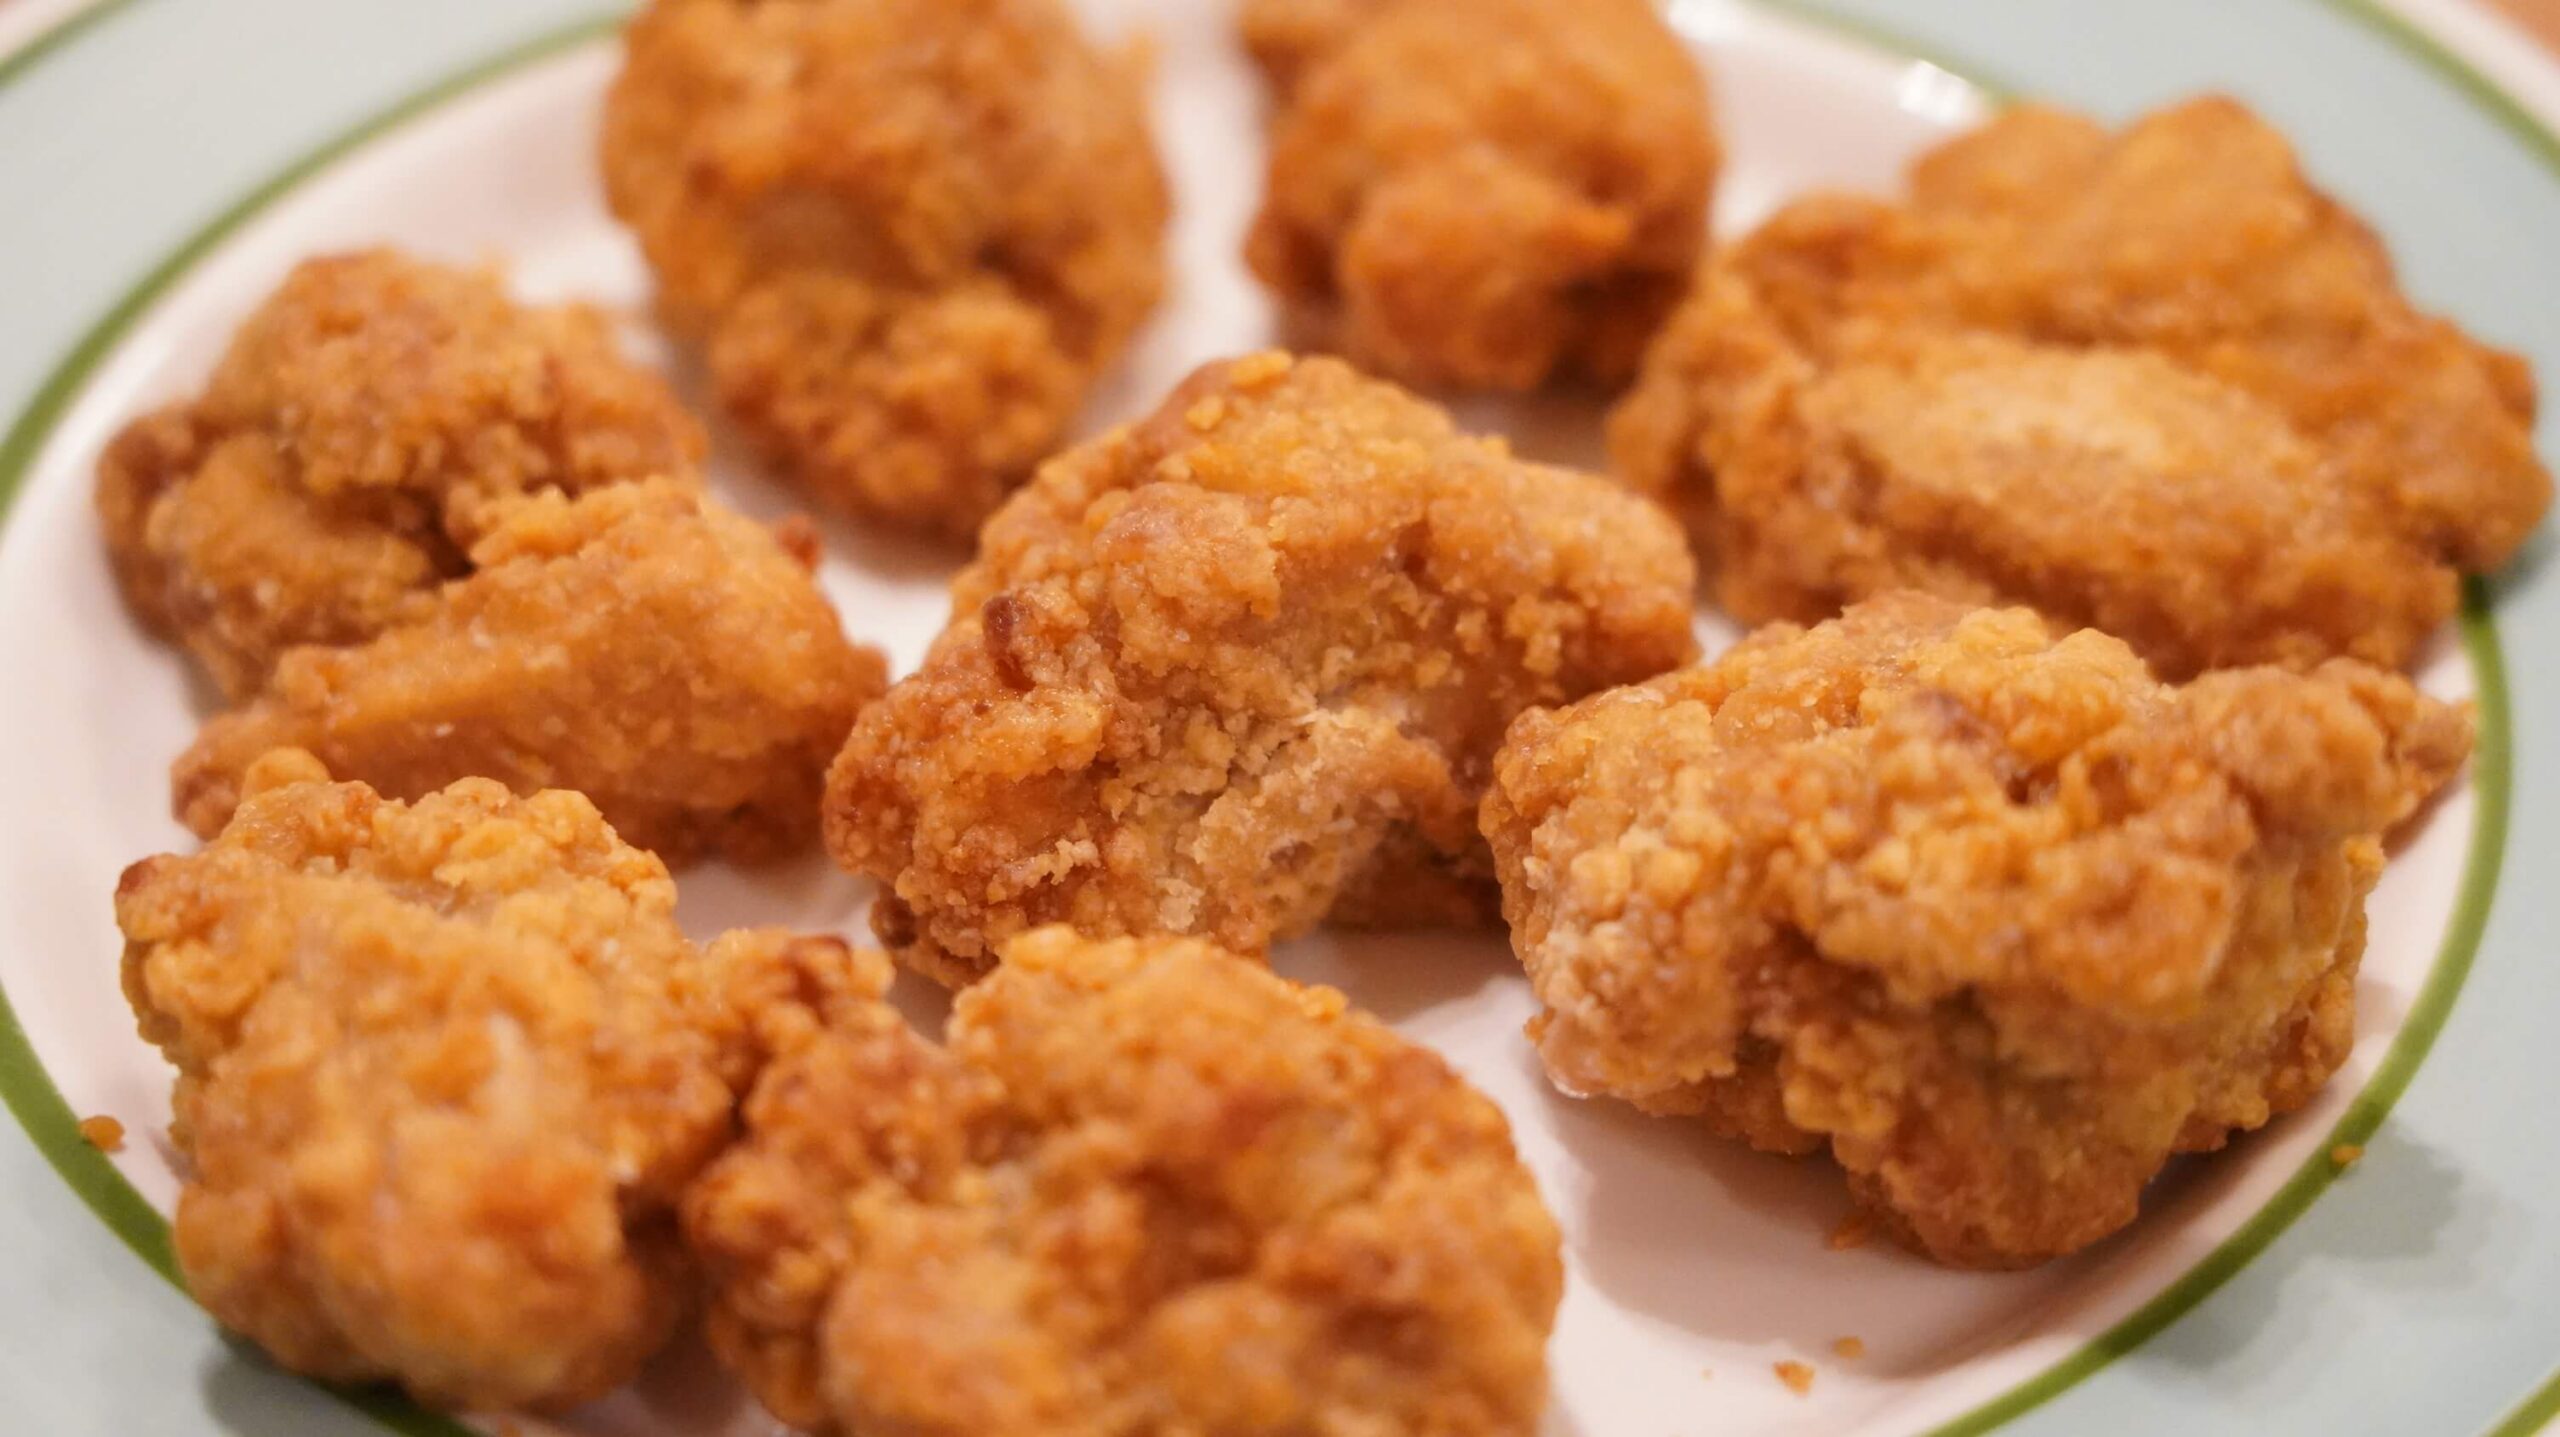 イオン・トップバリュ(TOPVALU)の冷凍食品「若鶏の竜田揚げ」の拡大写真